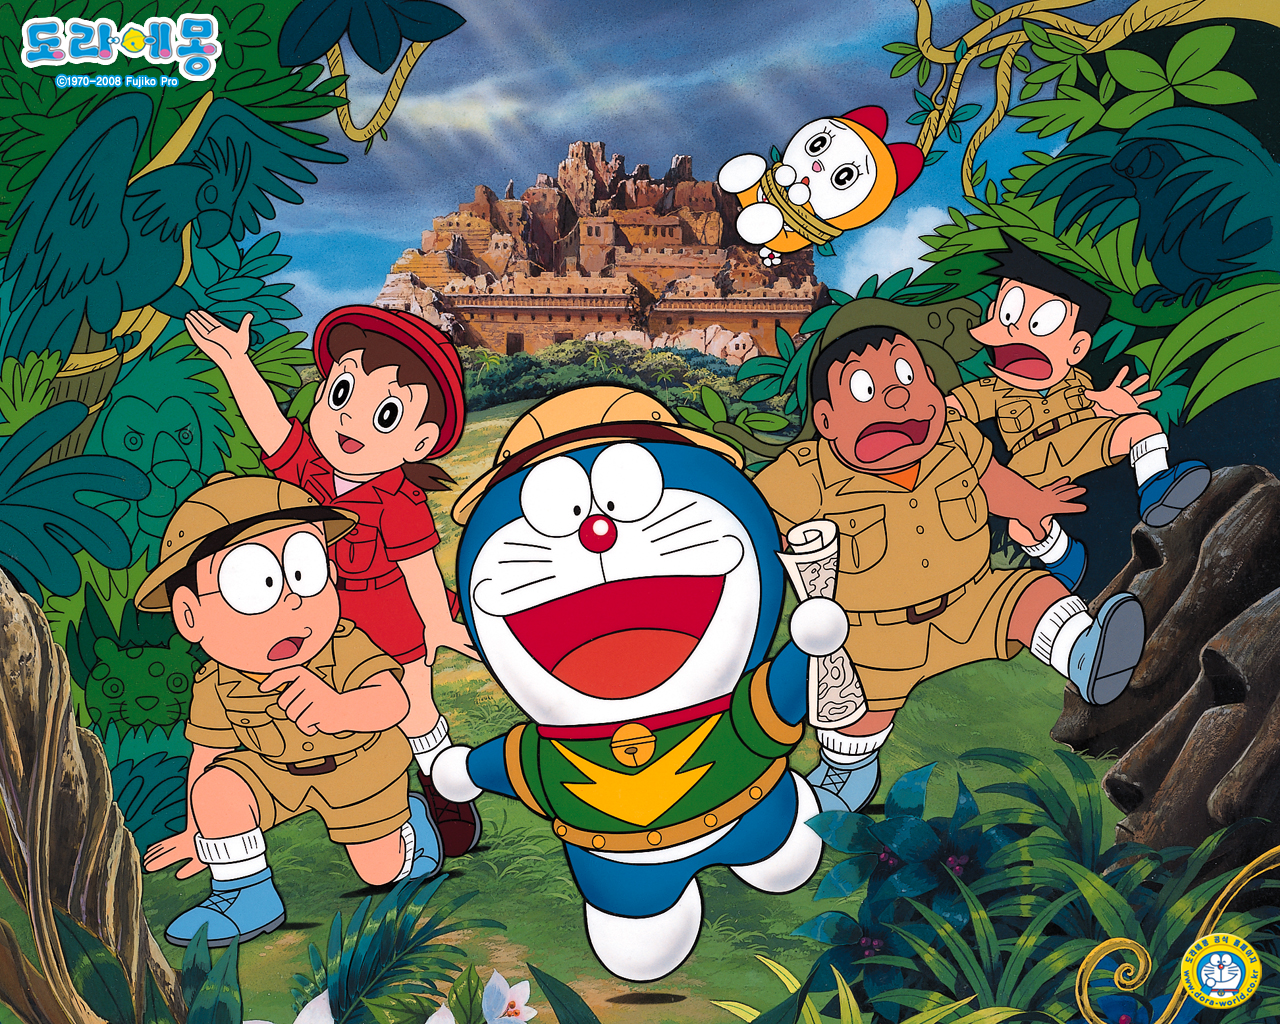 Ảnh Doraemon: Khám phá thế giới phim hoạt hình Doraemon thông qua những bức ảnh đầy đủ sắc màu và chi tiết nhất. Tận hưởng một ngày đẹp trời và cùng xem những hình ảnh liên quan đến chú mèo máy Doraemon này.